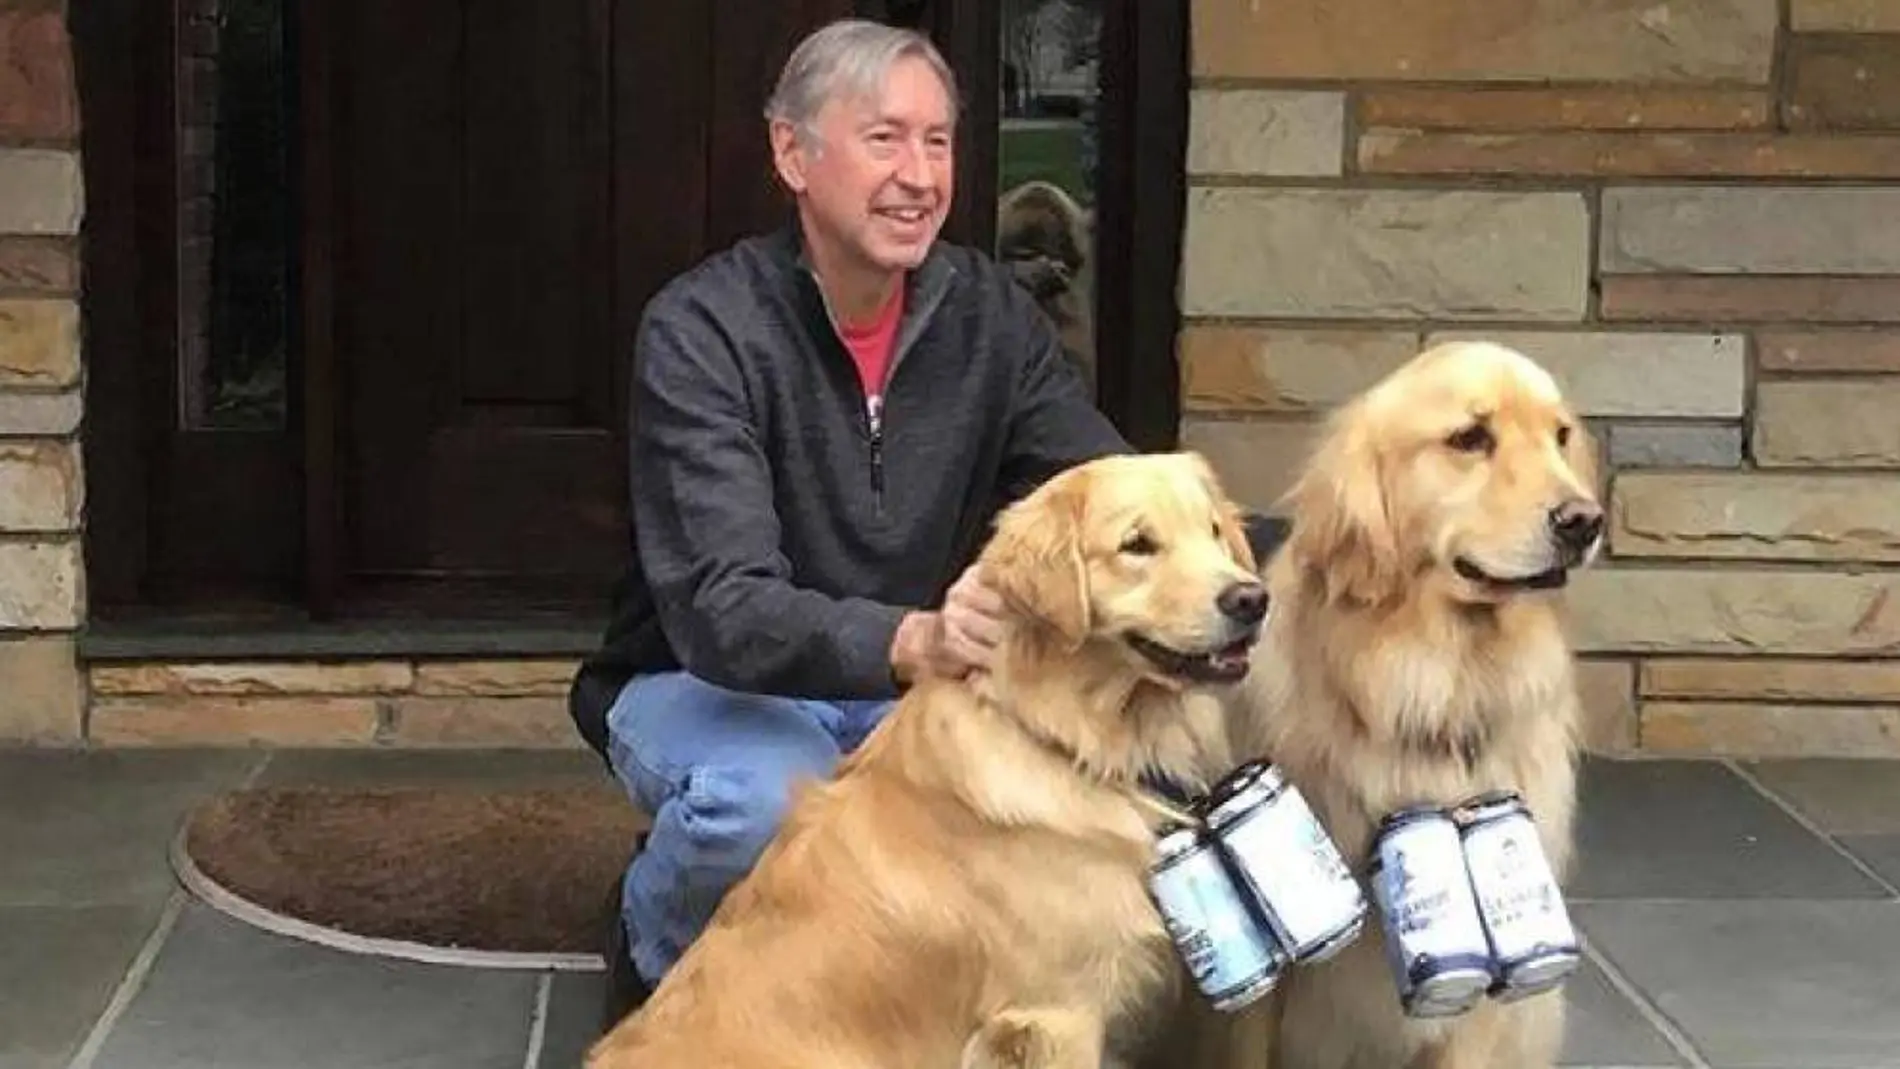 Mark se dio cuenta de que sus mascotas llamaban la atención, y decidió hacer las entregas a través de ellas para mantener la distancia y tranquilizar a sus clientes